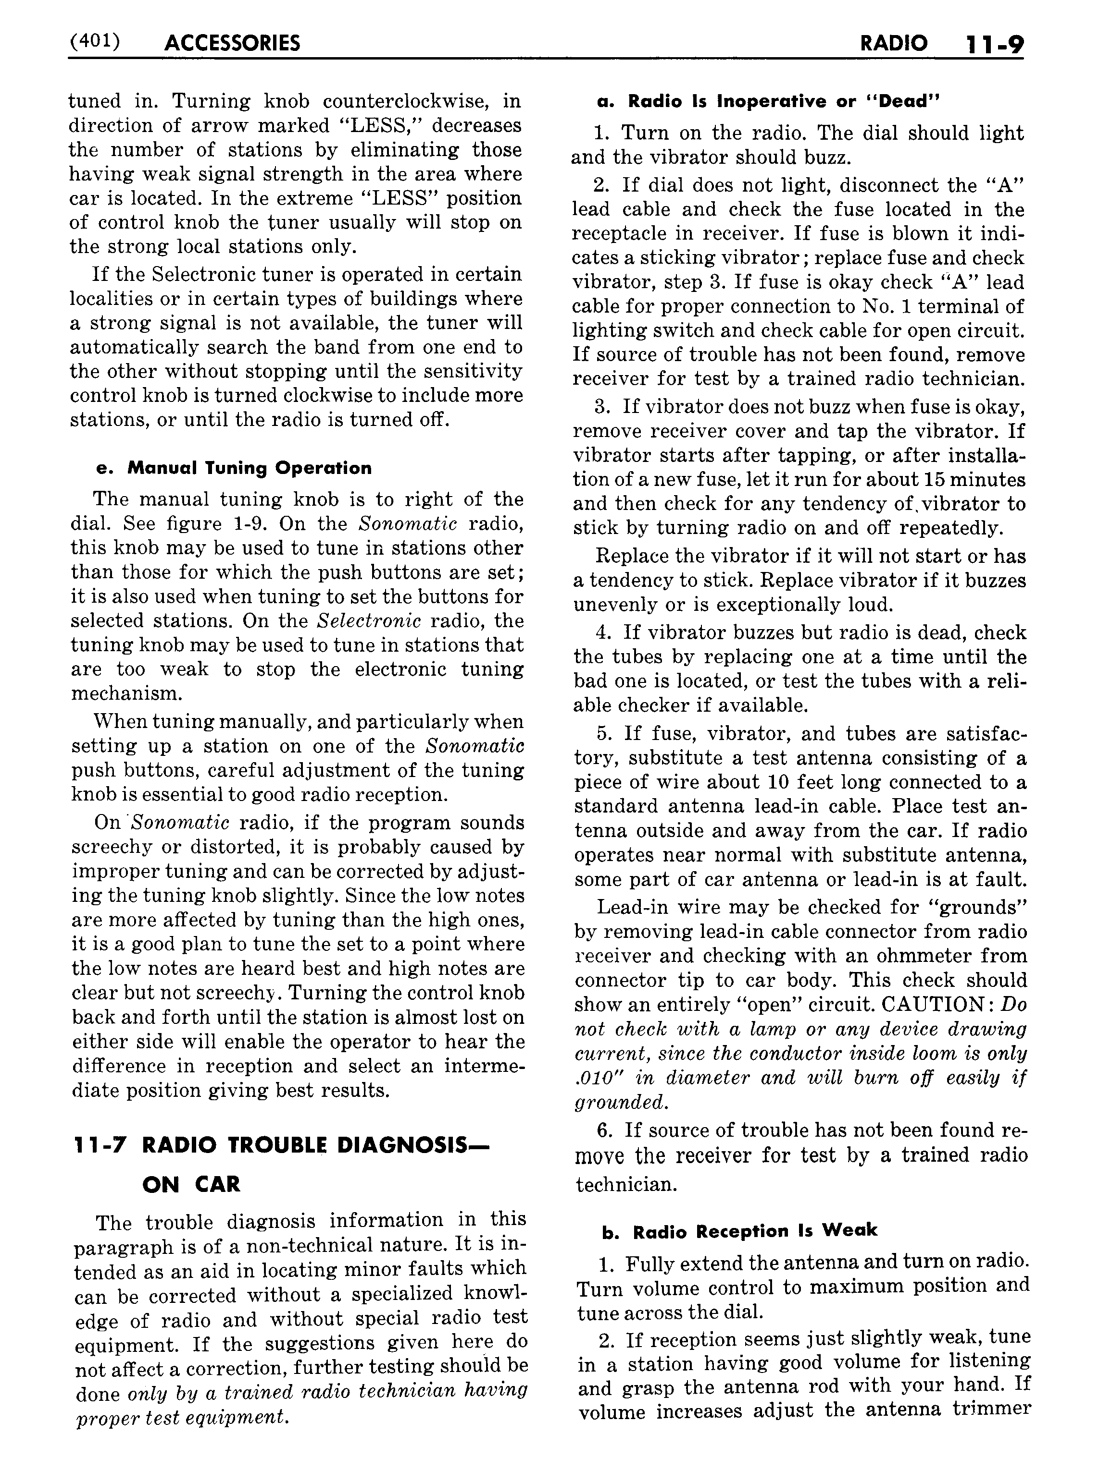 n_12 1951 Buick Shop Manual - Accessories-009-009.jpg